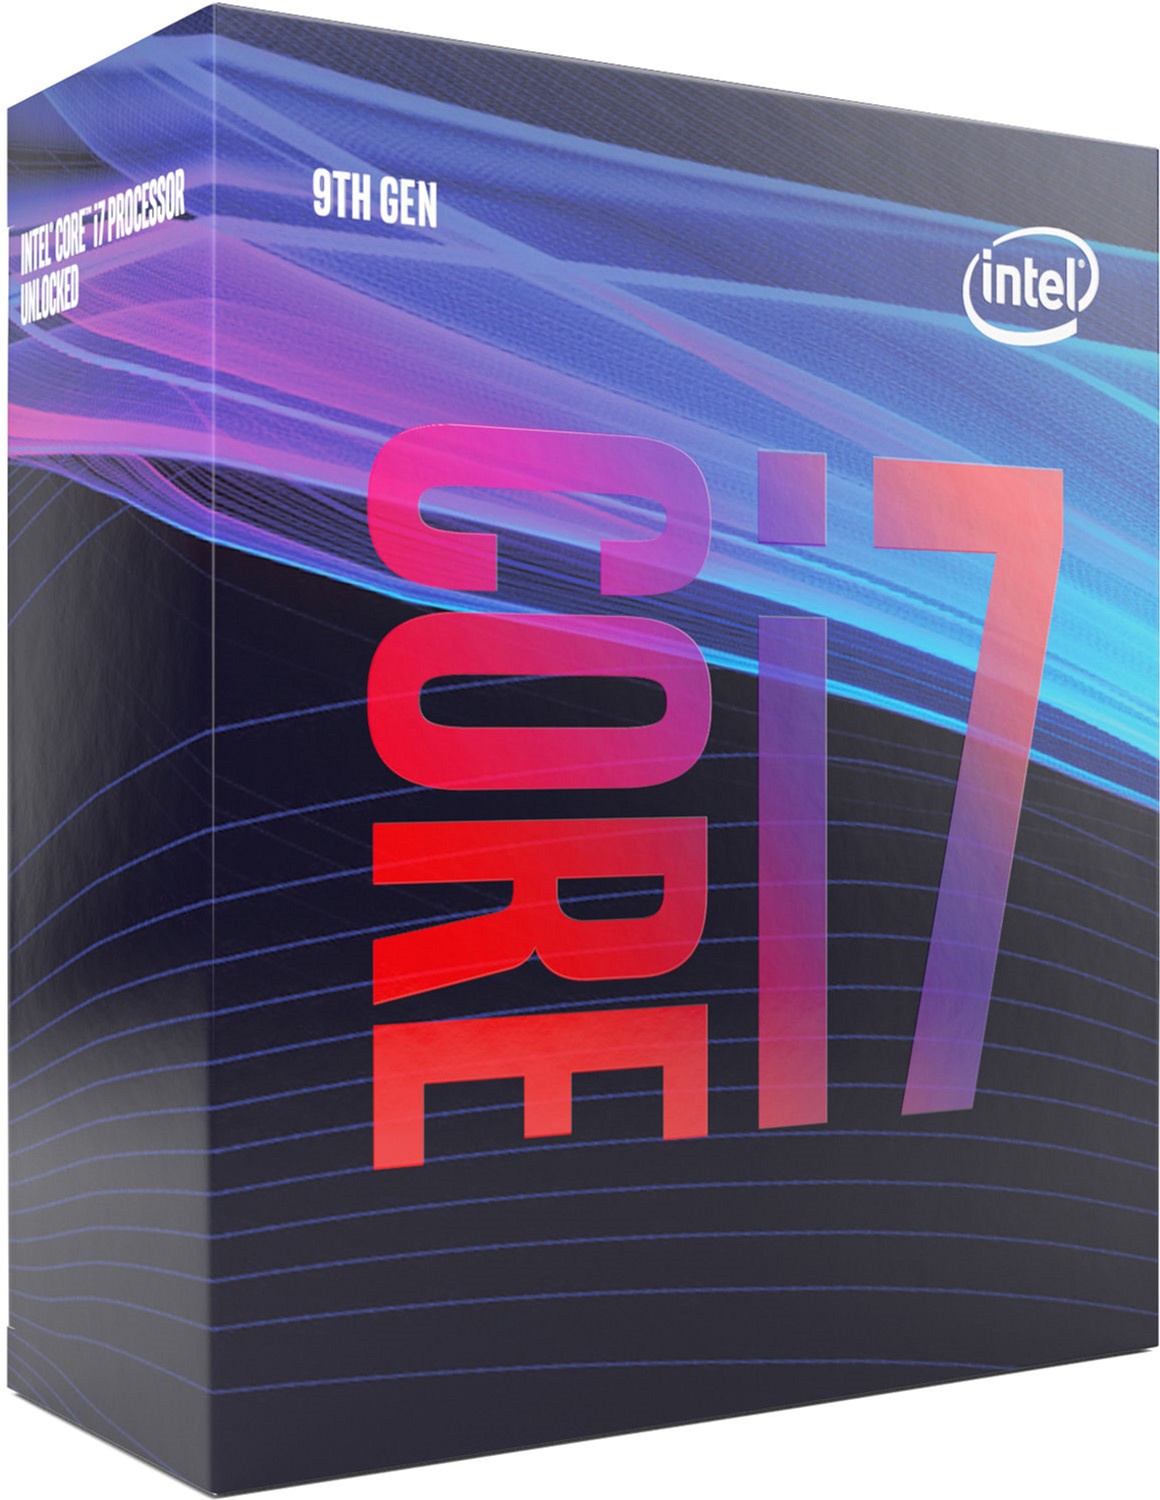 Акция на Процессор Intel Core i7-9700 3.0GHz/8GT/s/12MB (BX80684I79700) s1151 BOX от Rozetka UA